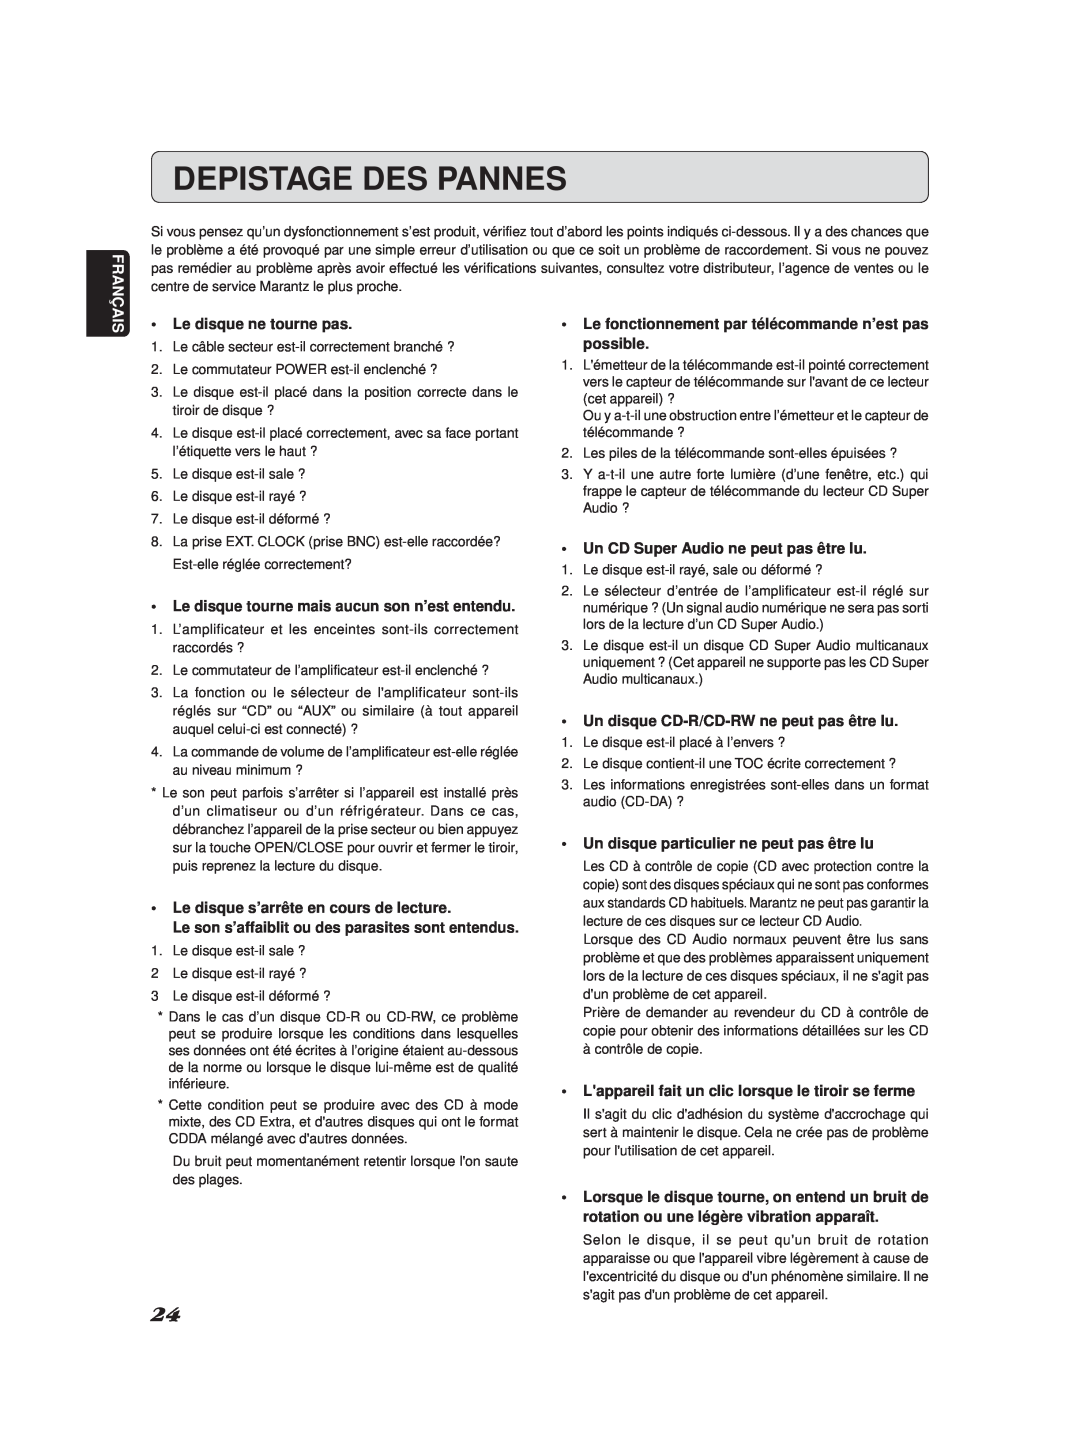 Marantz SA-11S2 manual Depistage Des Pannes 